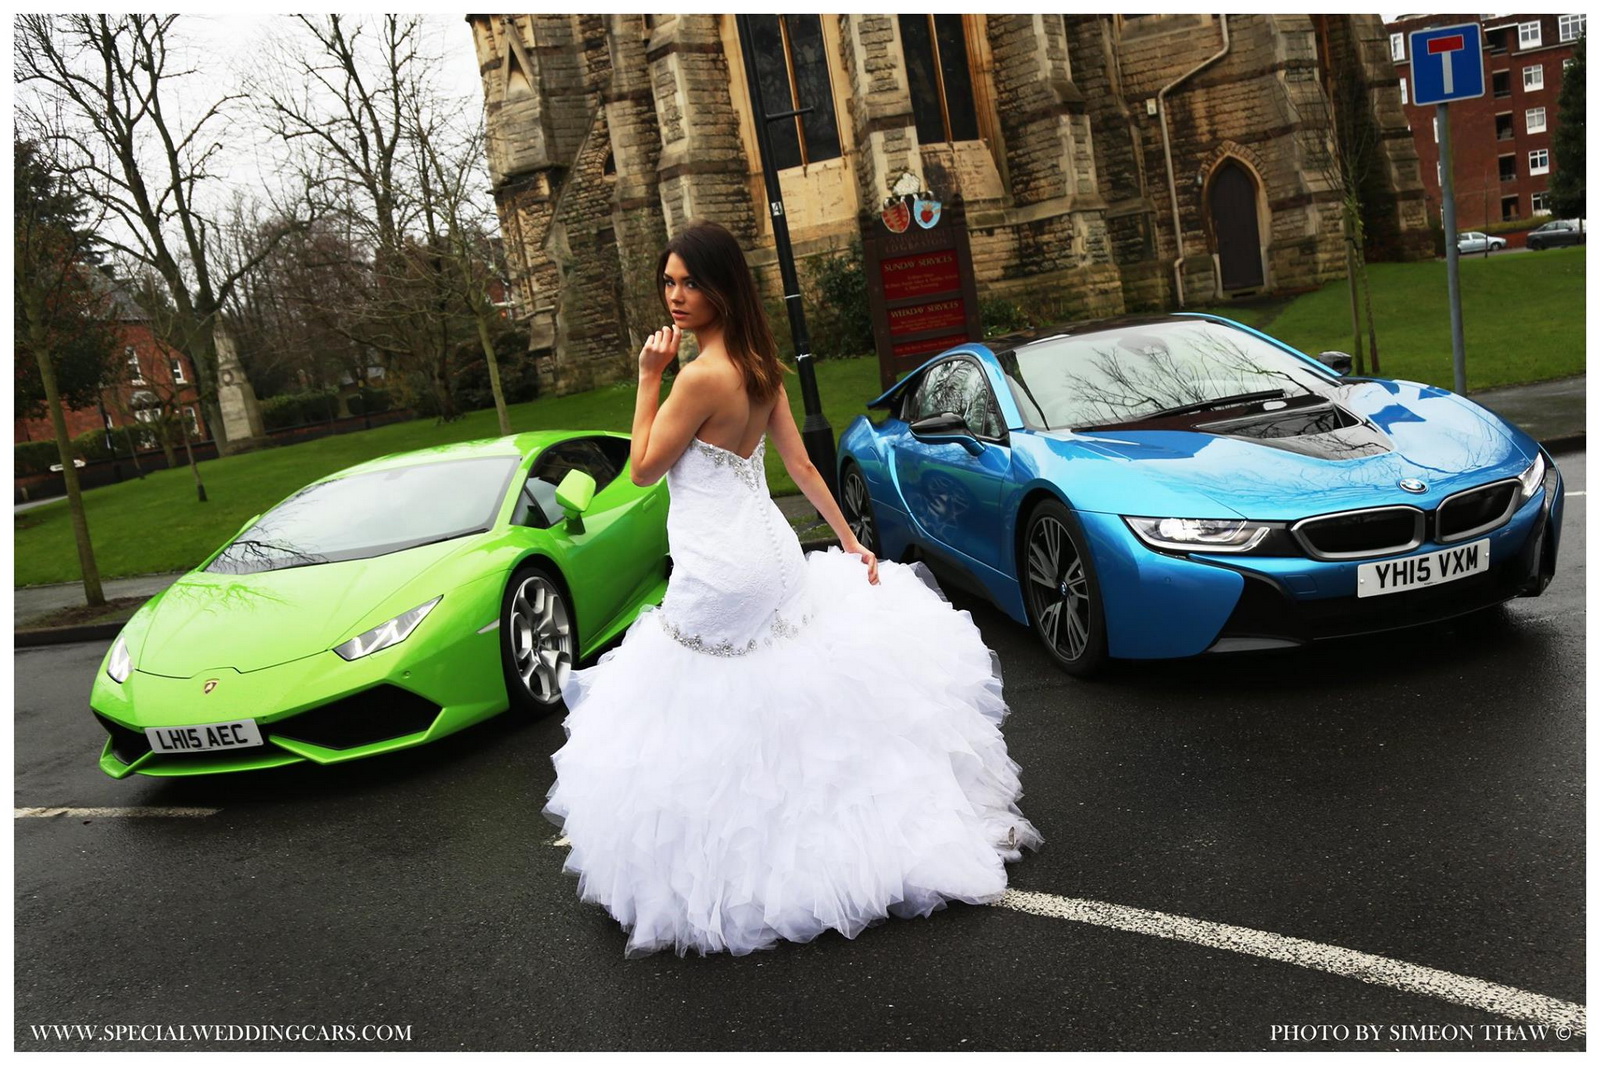 
Ngoài Huracan màu xanh cốm, công ty này còn sở hữu chiếc BMW i8 màu xanh ngọc, tuy nhiên chỉ được sử dụng cho các buổi chụp hình cưới.
